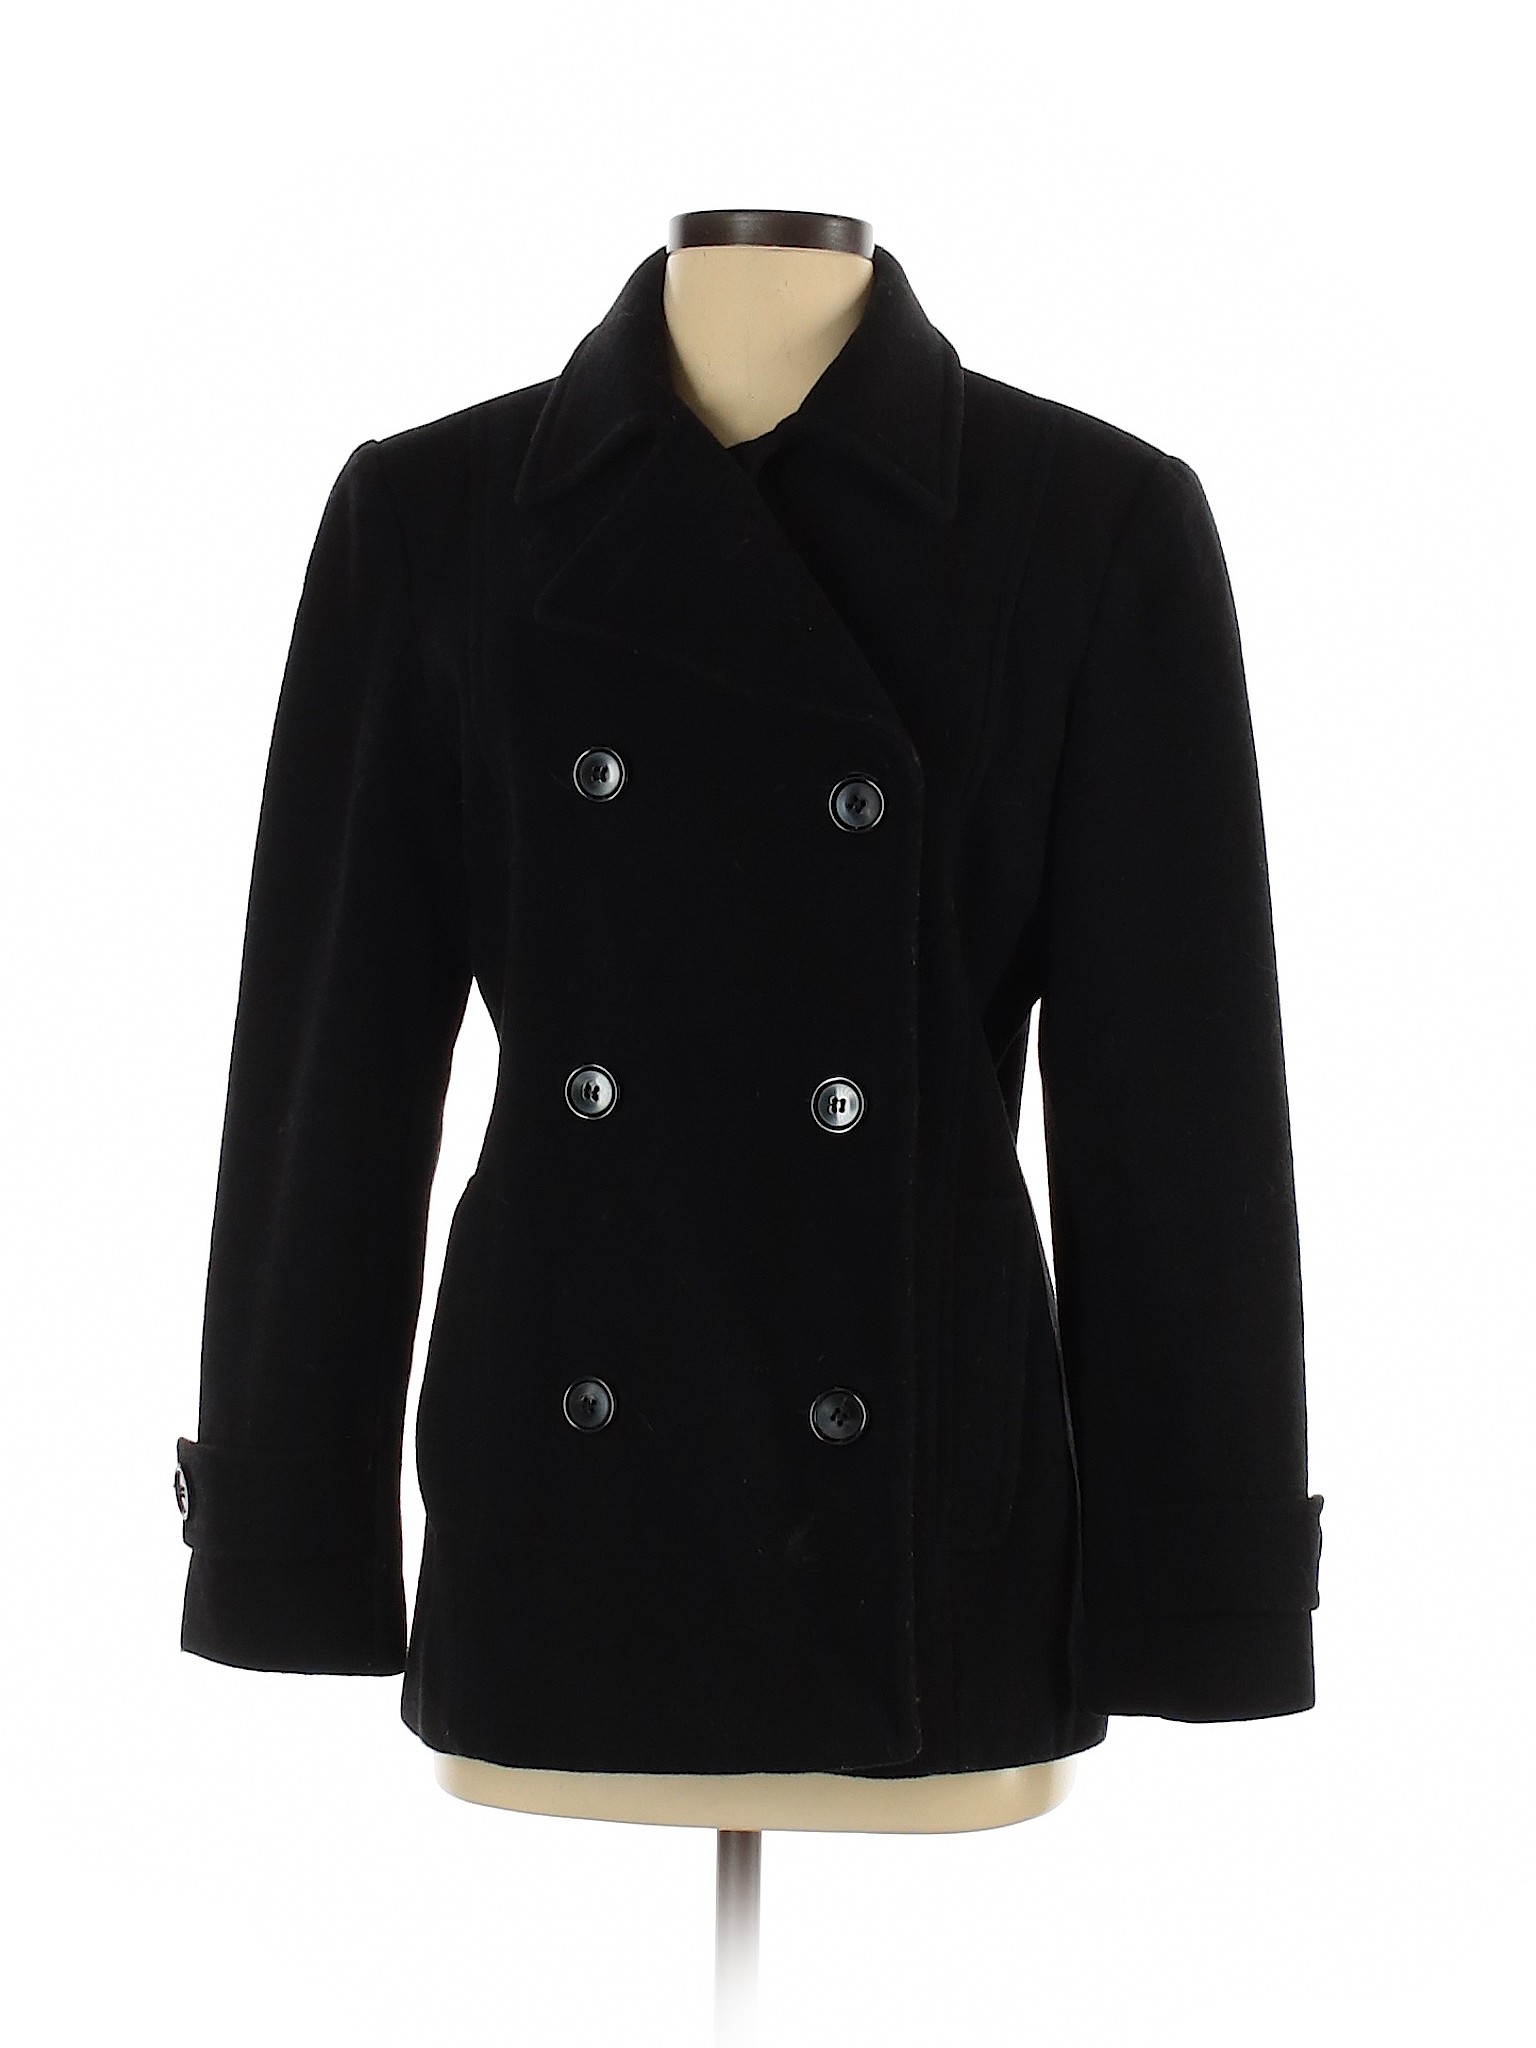 Jason Kole Women Black Wool Coat S | eBay